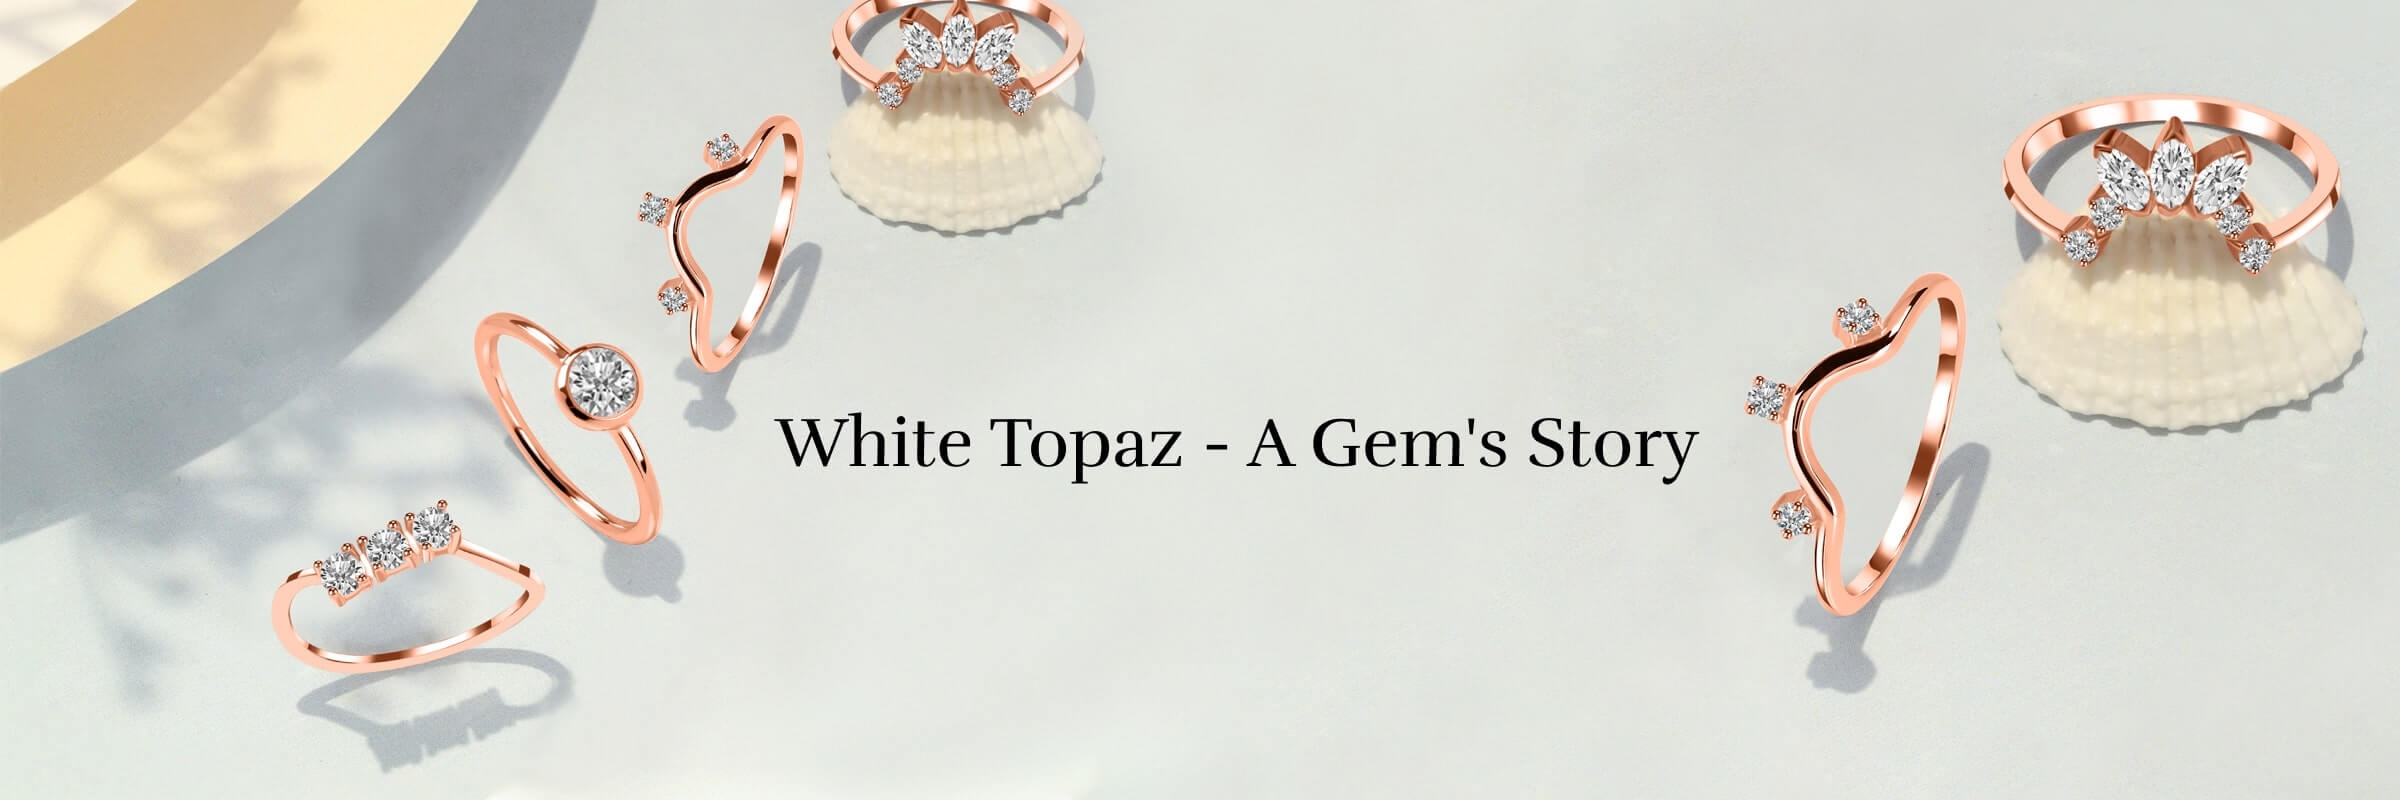 History of White Topaz Gemstone